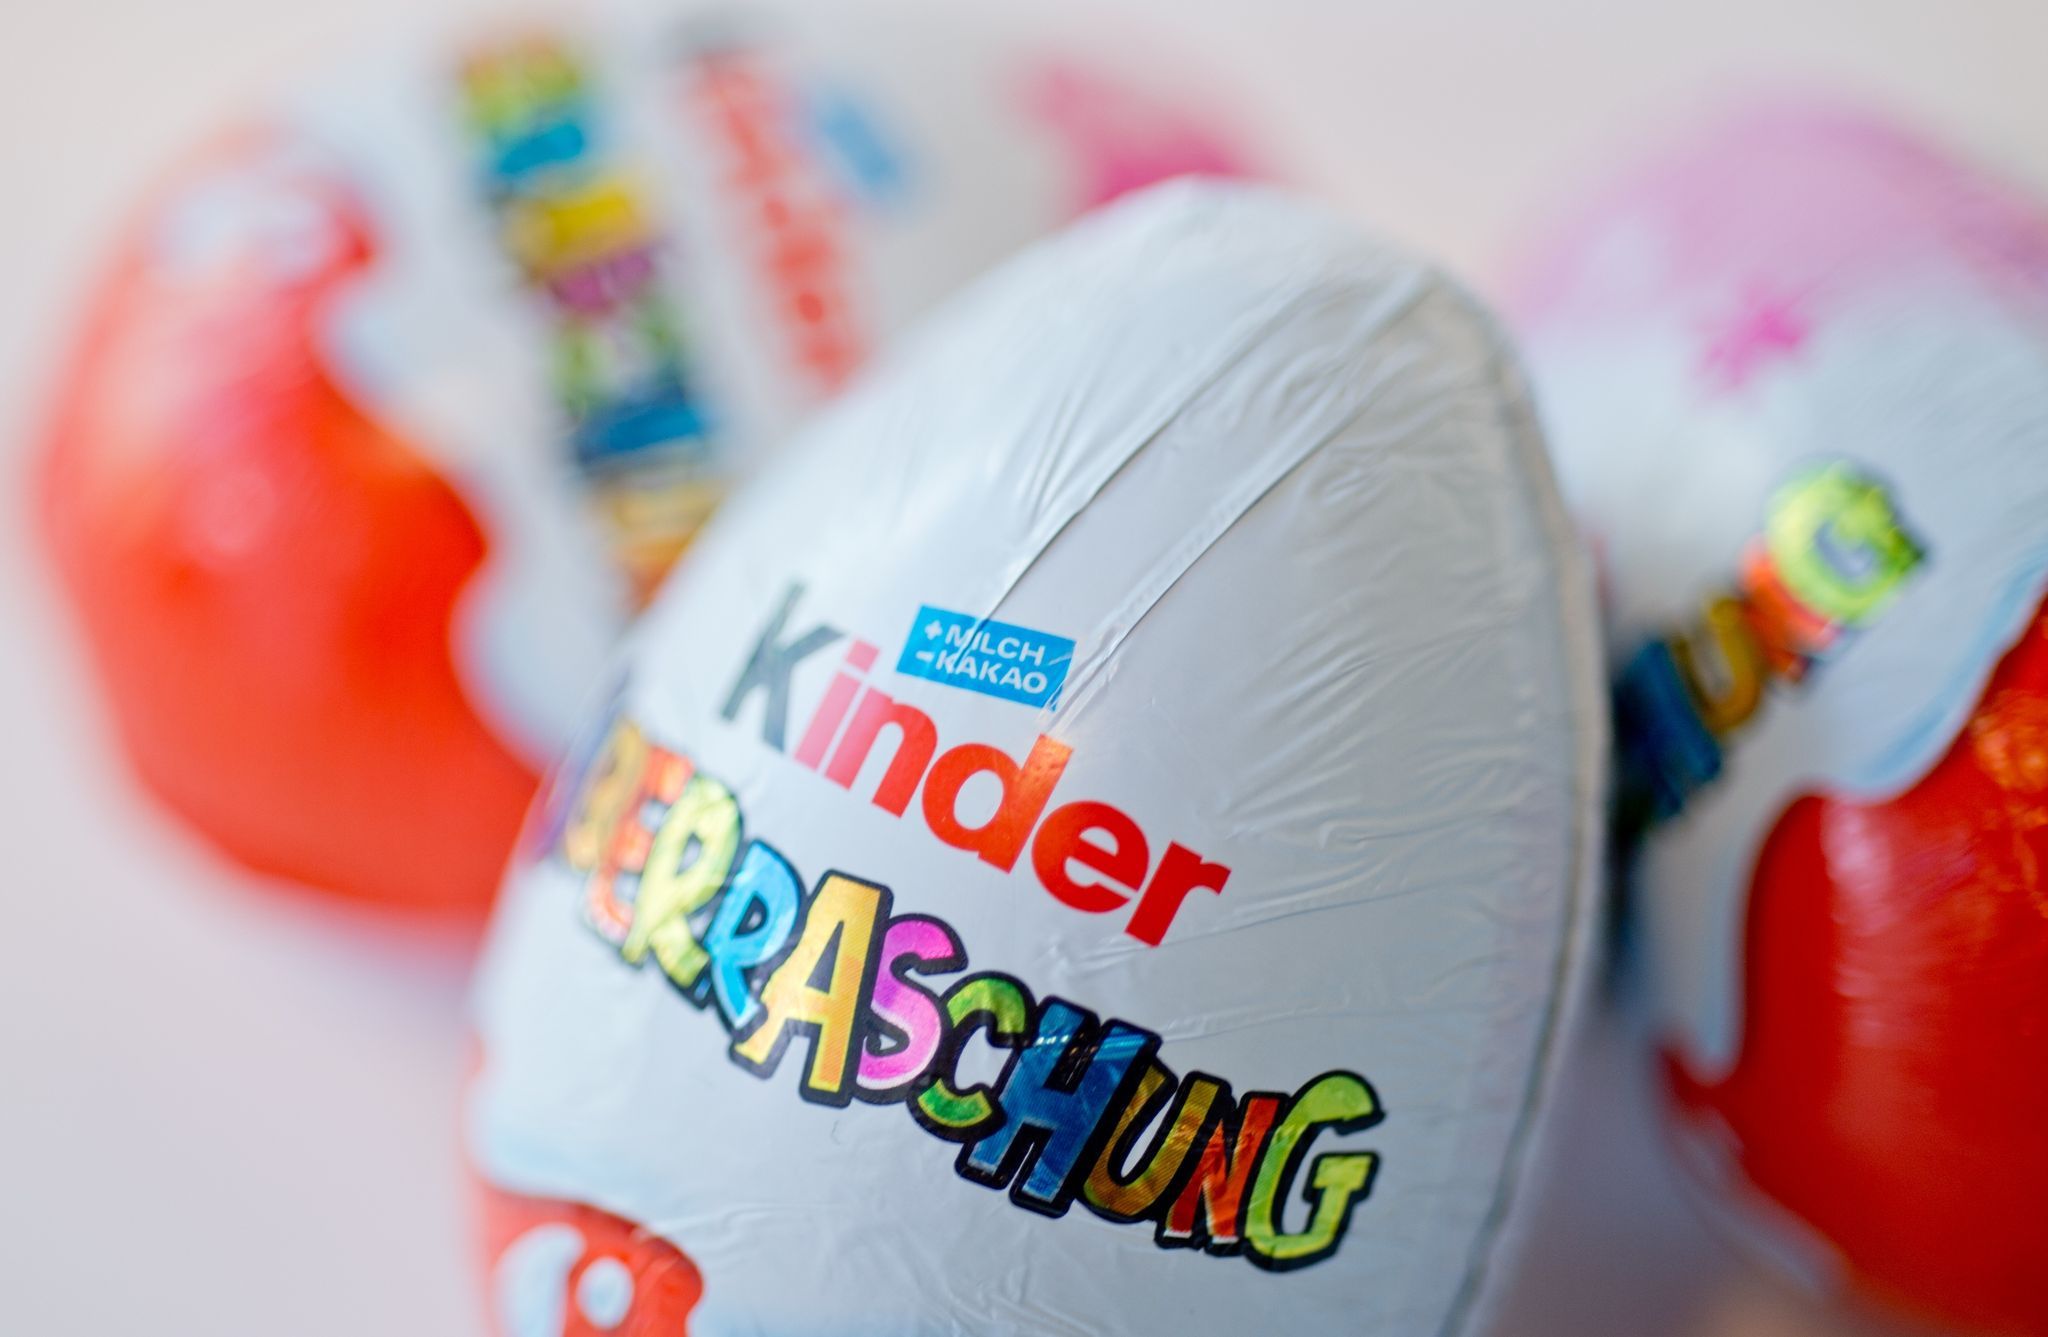 Knapp zwei Wochen vor Ostern ruft Ferrero in Deutschland einige Chargen verschiedener Kinder-Produkte zurück – darunter kinder Überraschung 3er-Pack mit dem Mindesthaltbarkeitsdatum zwischen April bis Juni 2022. Foto: dpa/Skolimowska